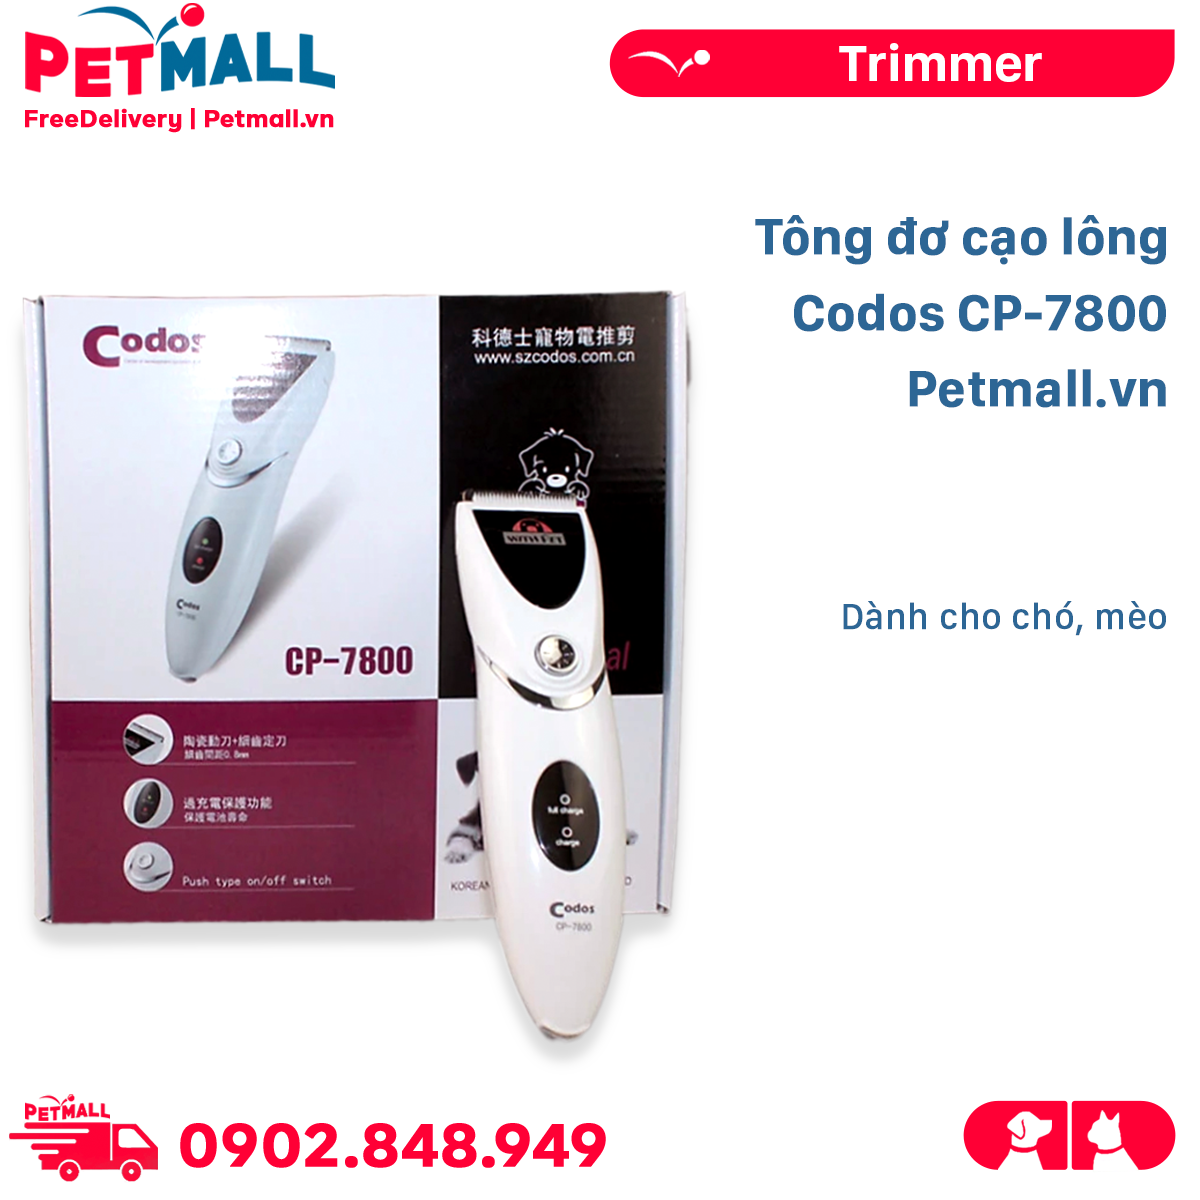 Tông đơ cạo lông Codos CP-7800 - Dành cho chó mèo Petmall